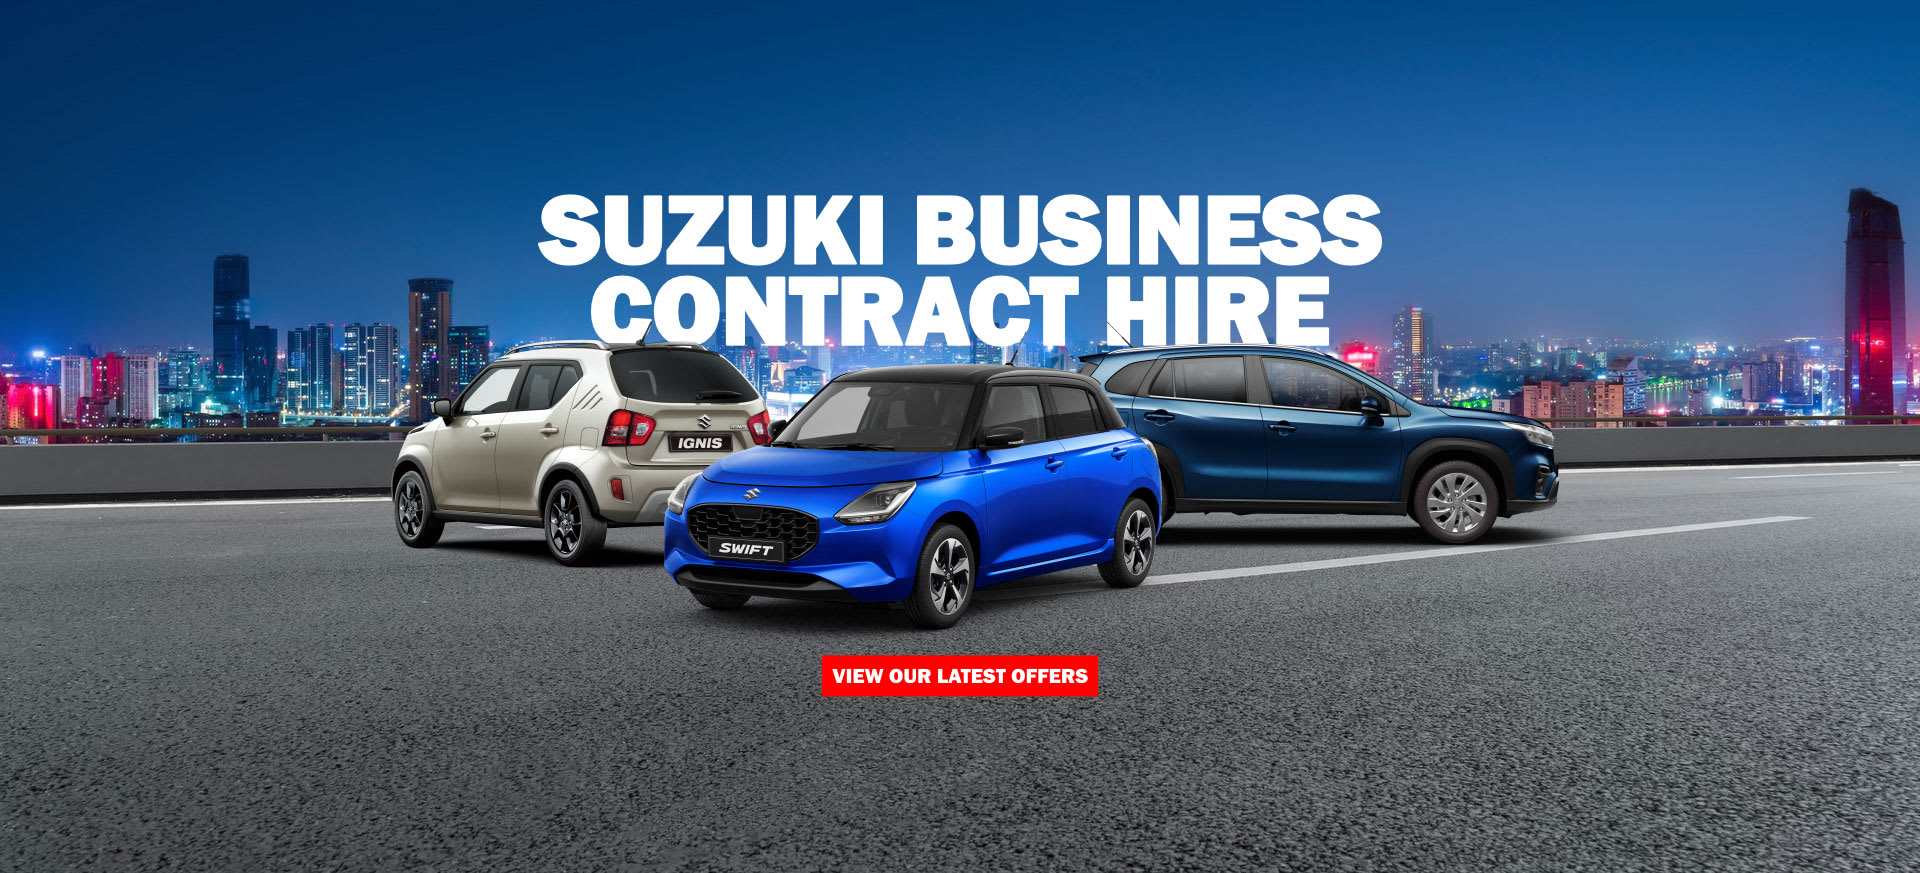 Suzuki Business Contract Hire